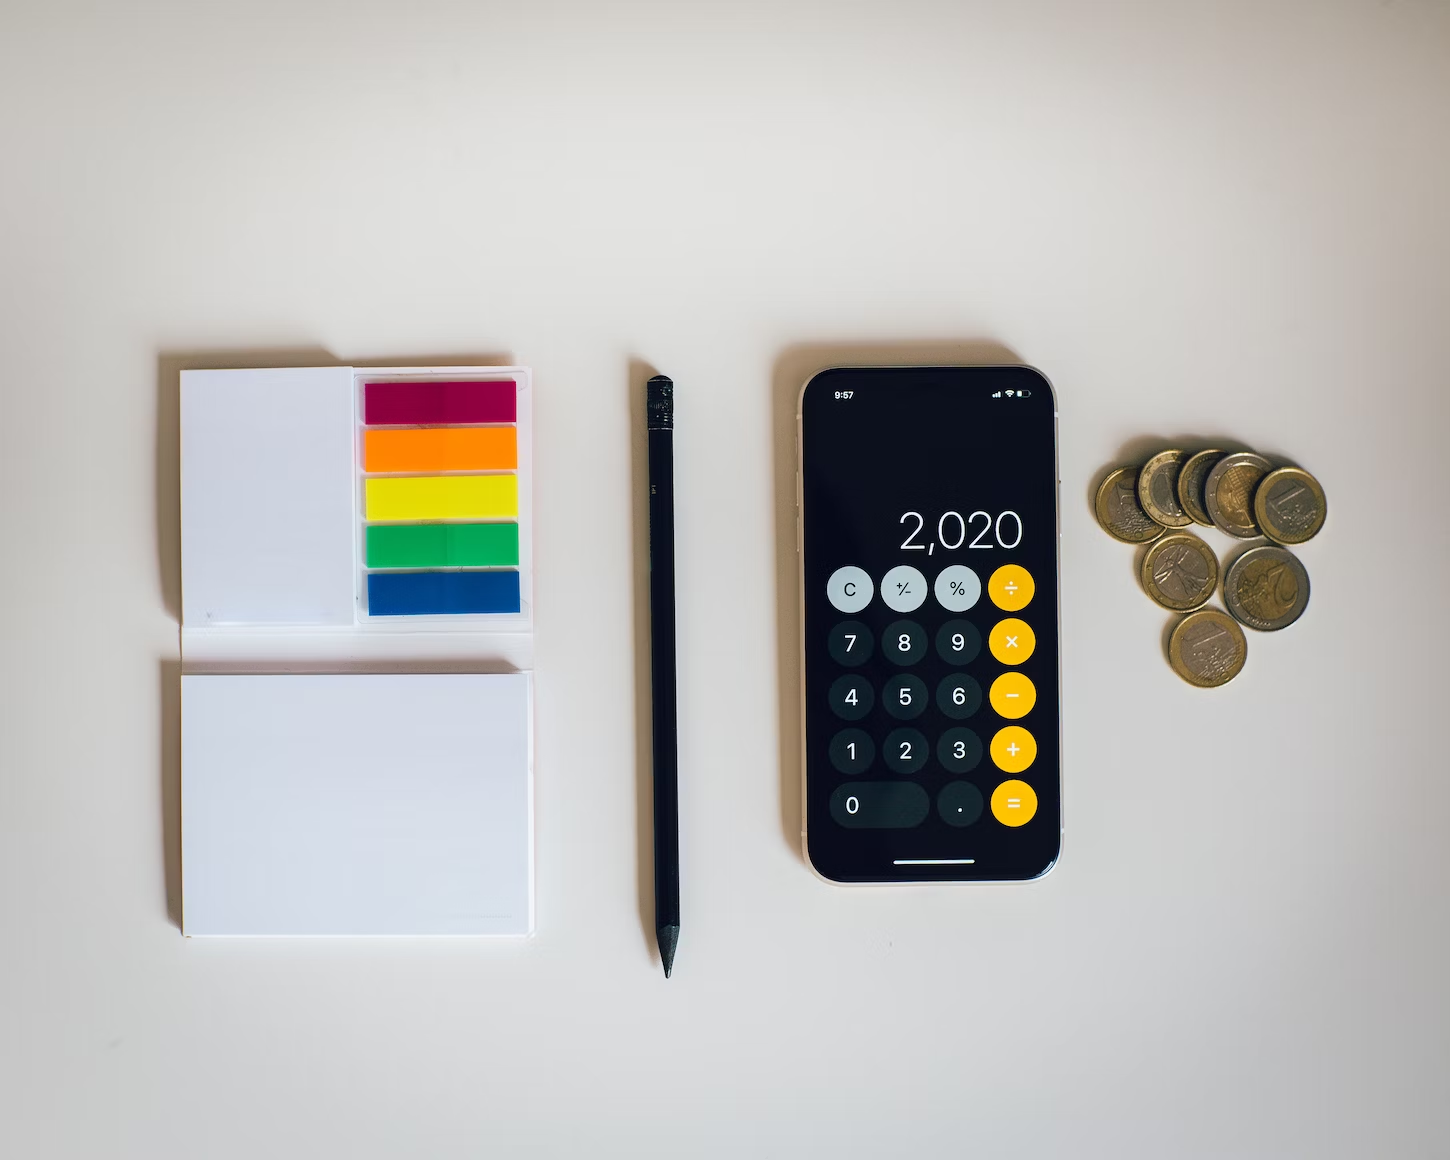 IPhone avec l'application calculatrice posé à côté de post-its de couleur, d'un crayon à papier et de pièces